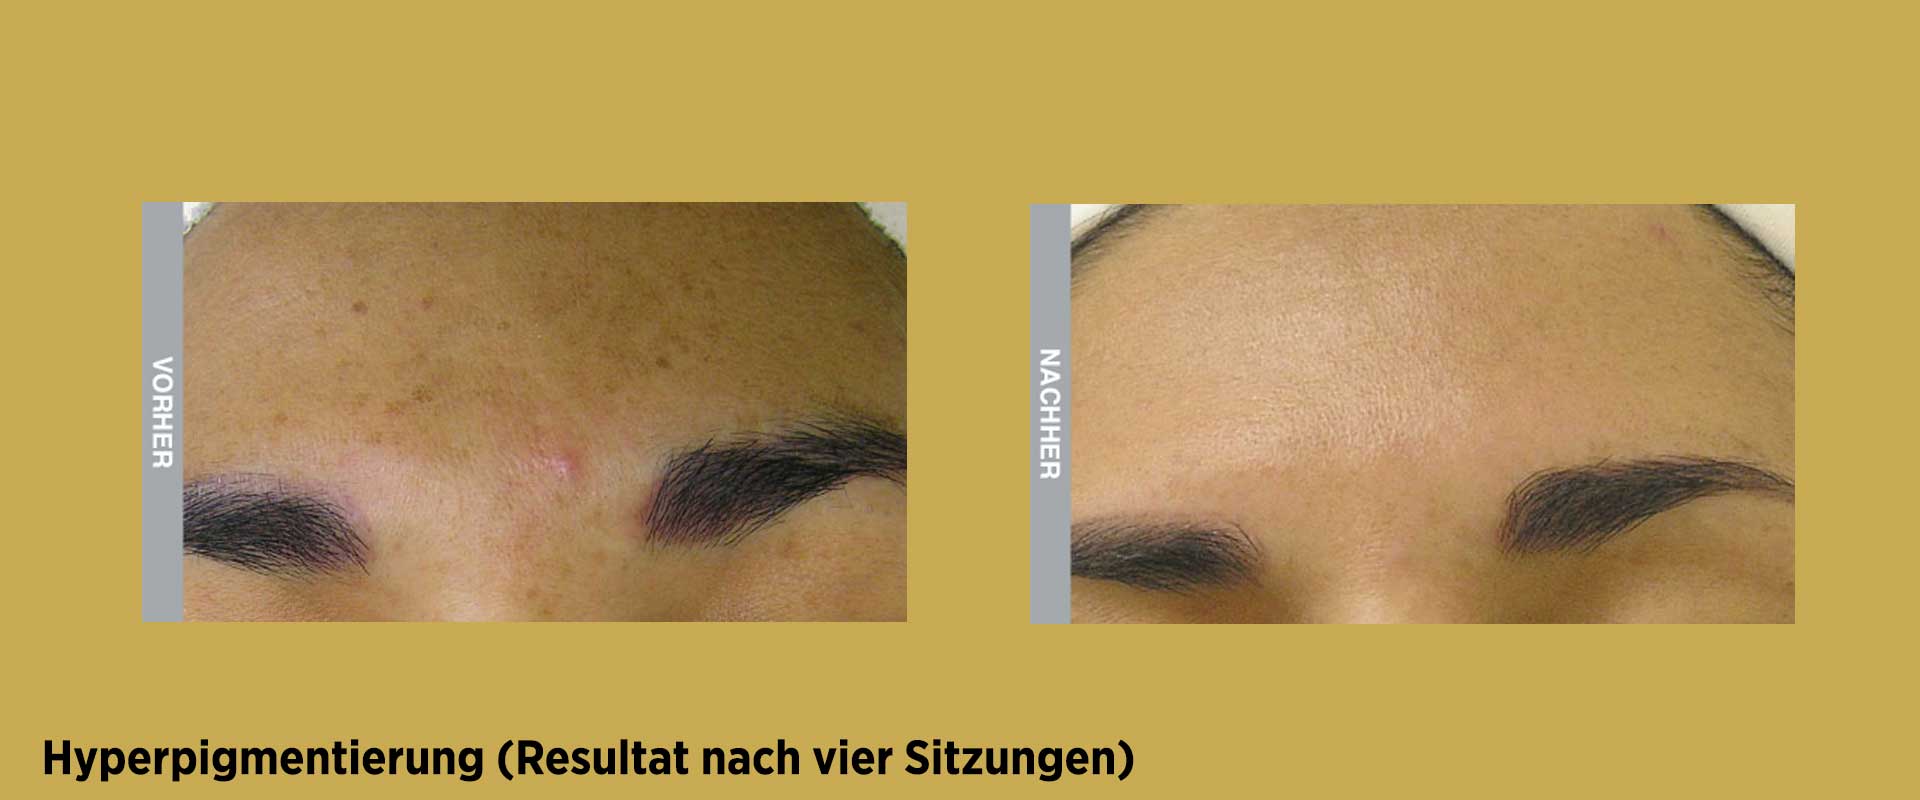 Vorher / Nachher Behandlung gegen Hyperpigmentierung mit HydraFacial